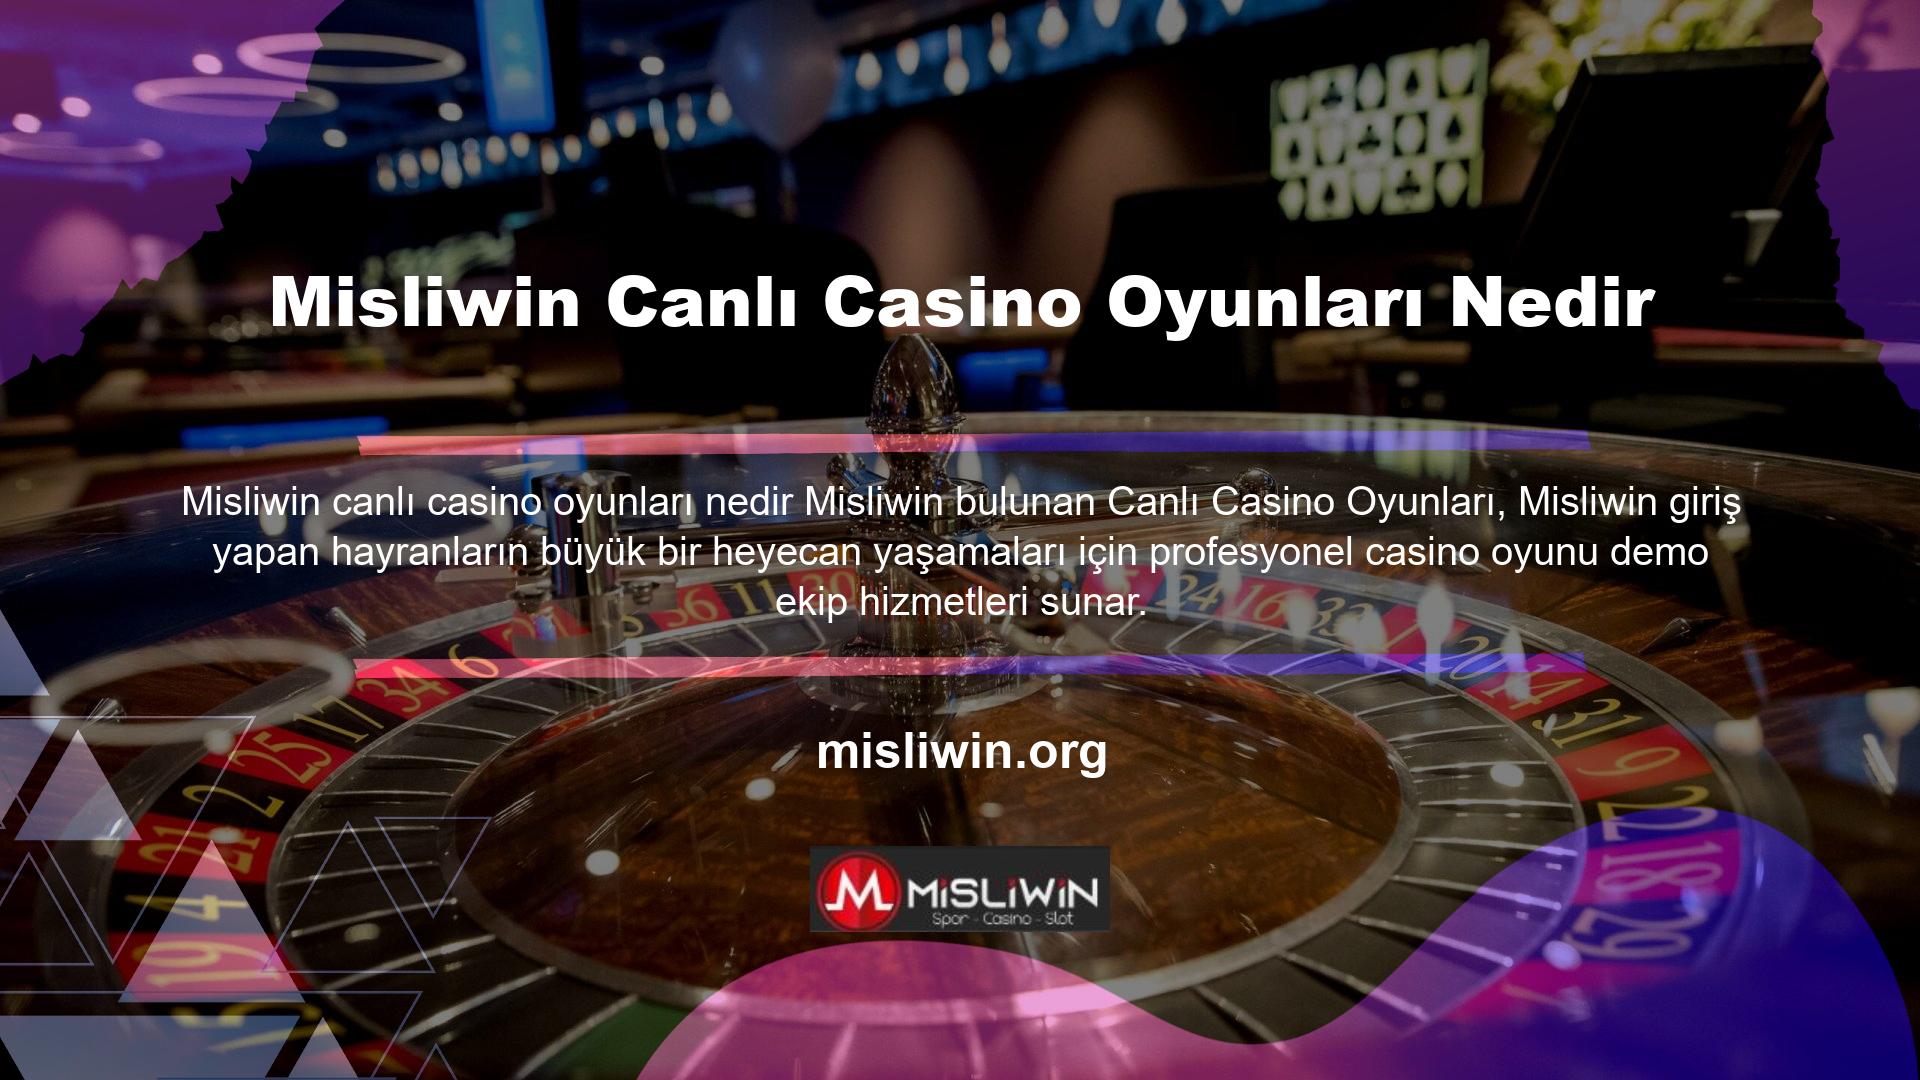 Casino oyunlarına hiç yatırım yapmamış olanlar için casino sitelerinde kazanma şansı oldukça yüksektir